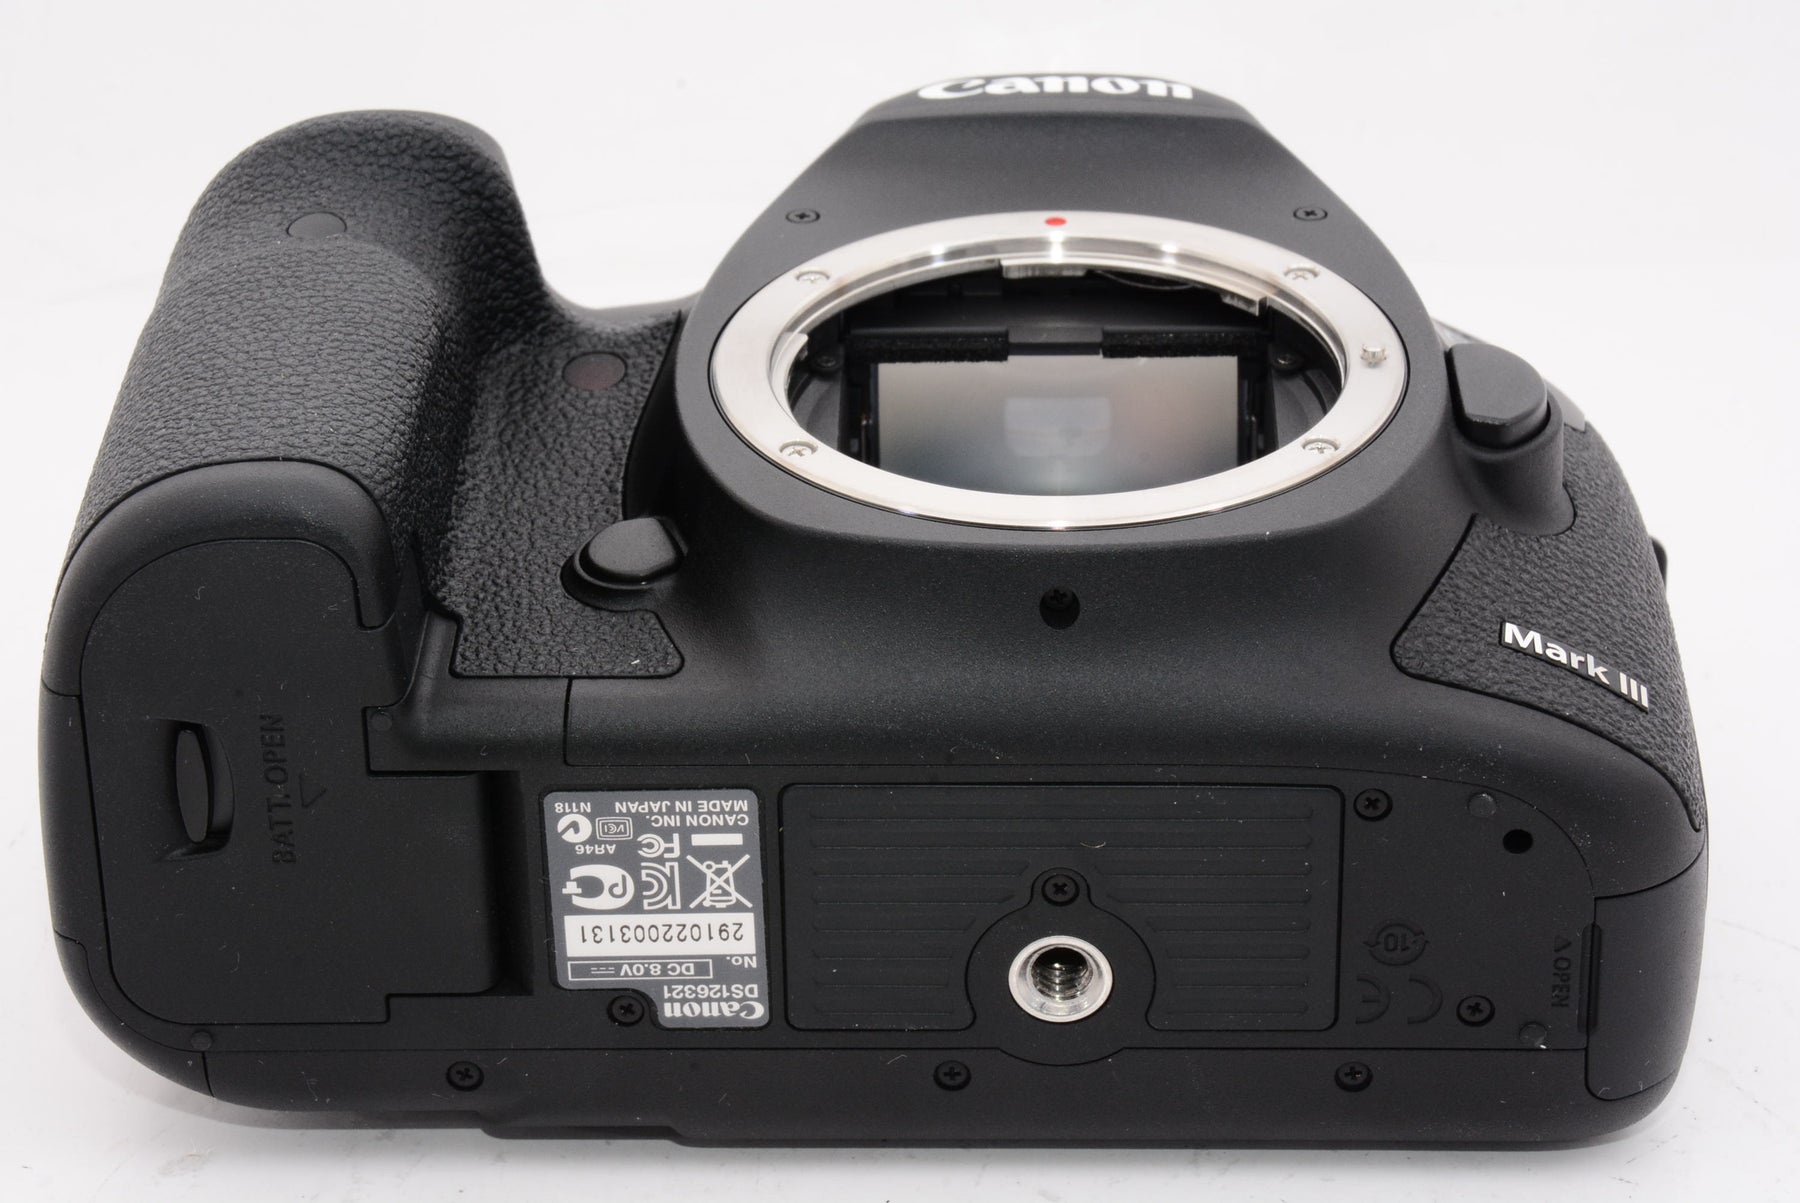 【ほぼ新品】Canon デジタル一眼レフカメラ EOS 5D Mark III ボディ EOS5DMK3